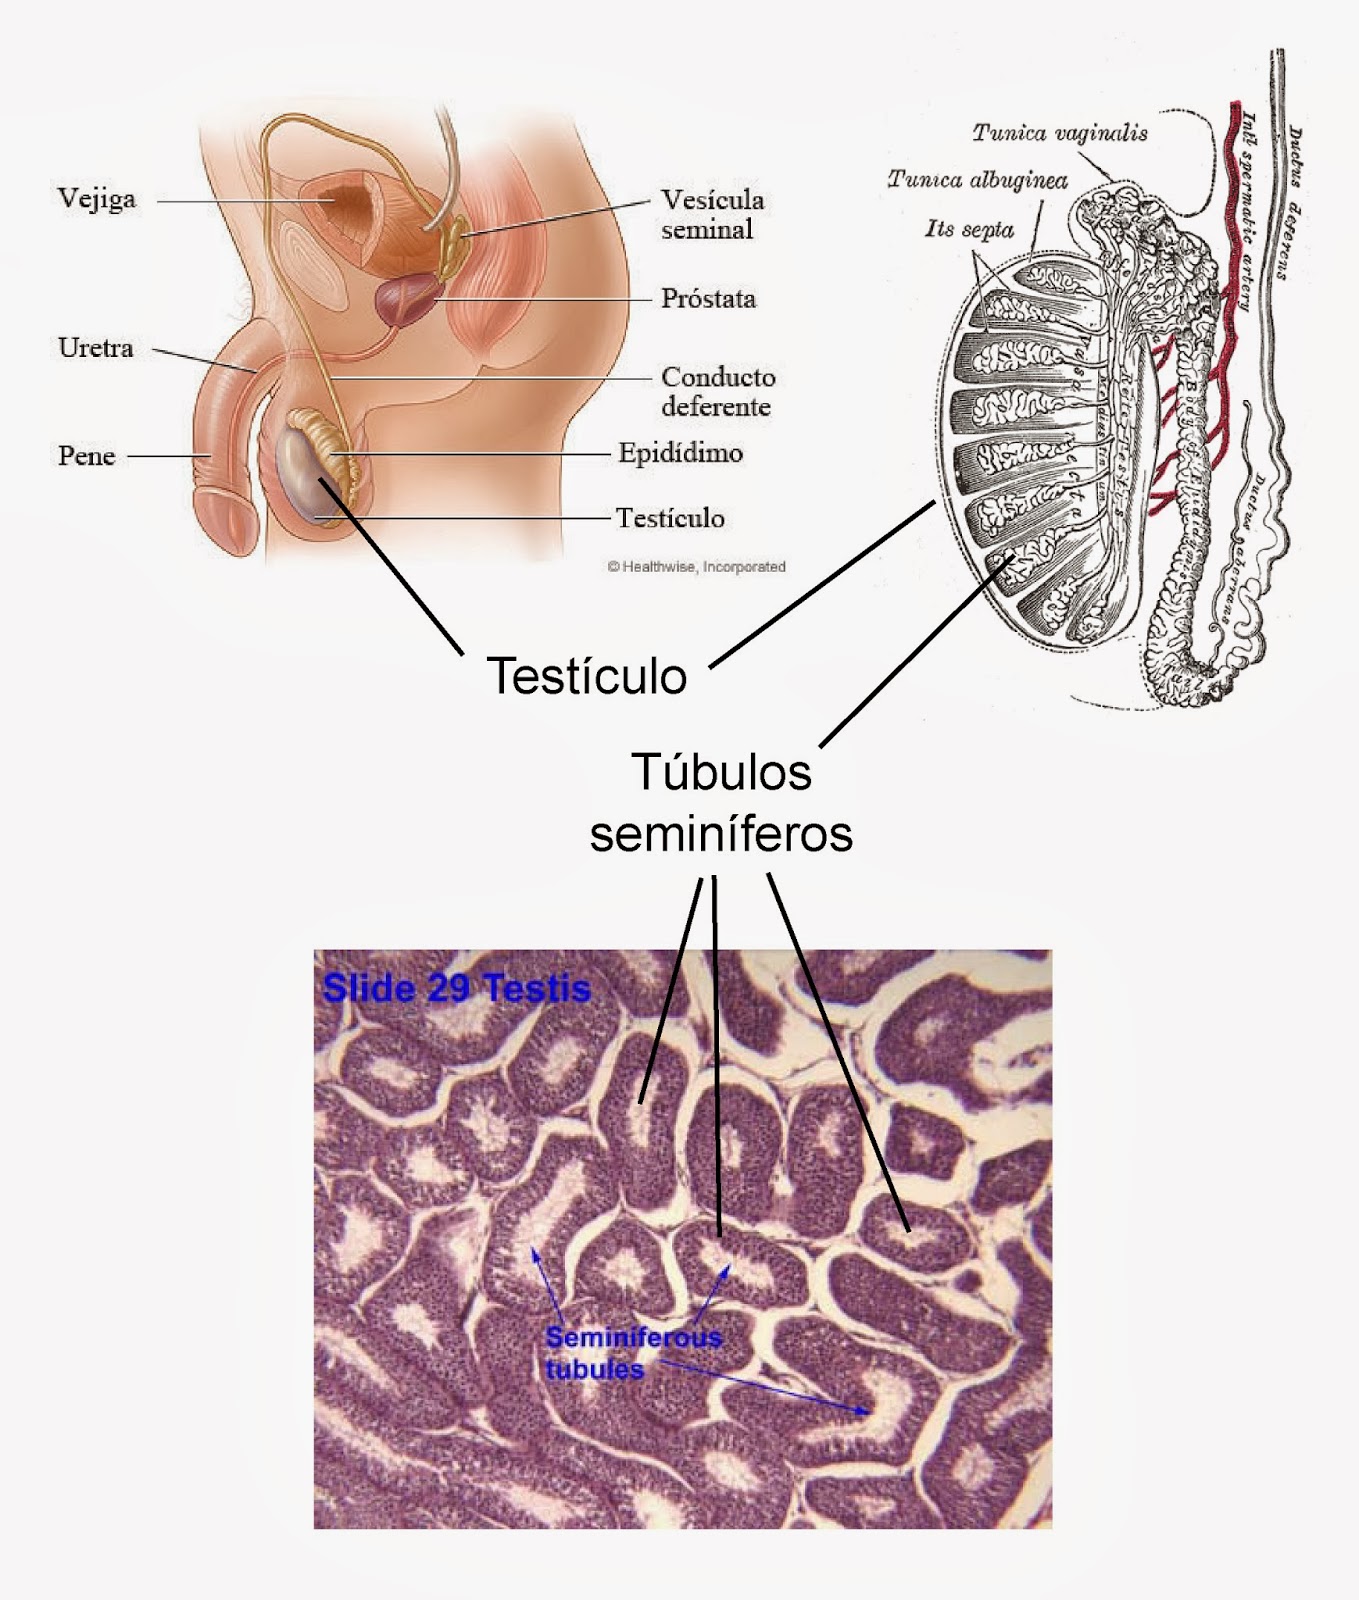 Localización de los testículos y los túbulos seminíferos en el aparato reproductor masculino